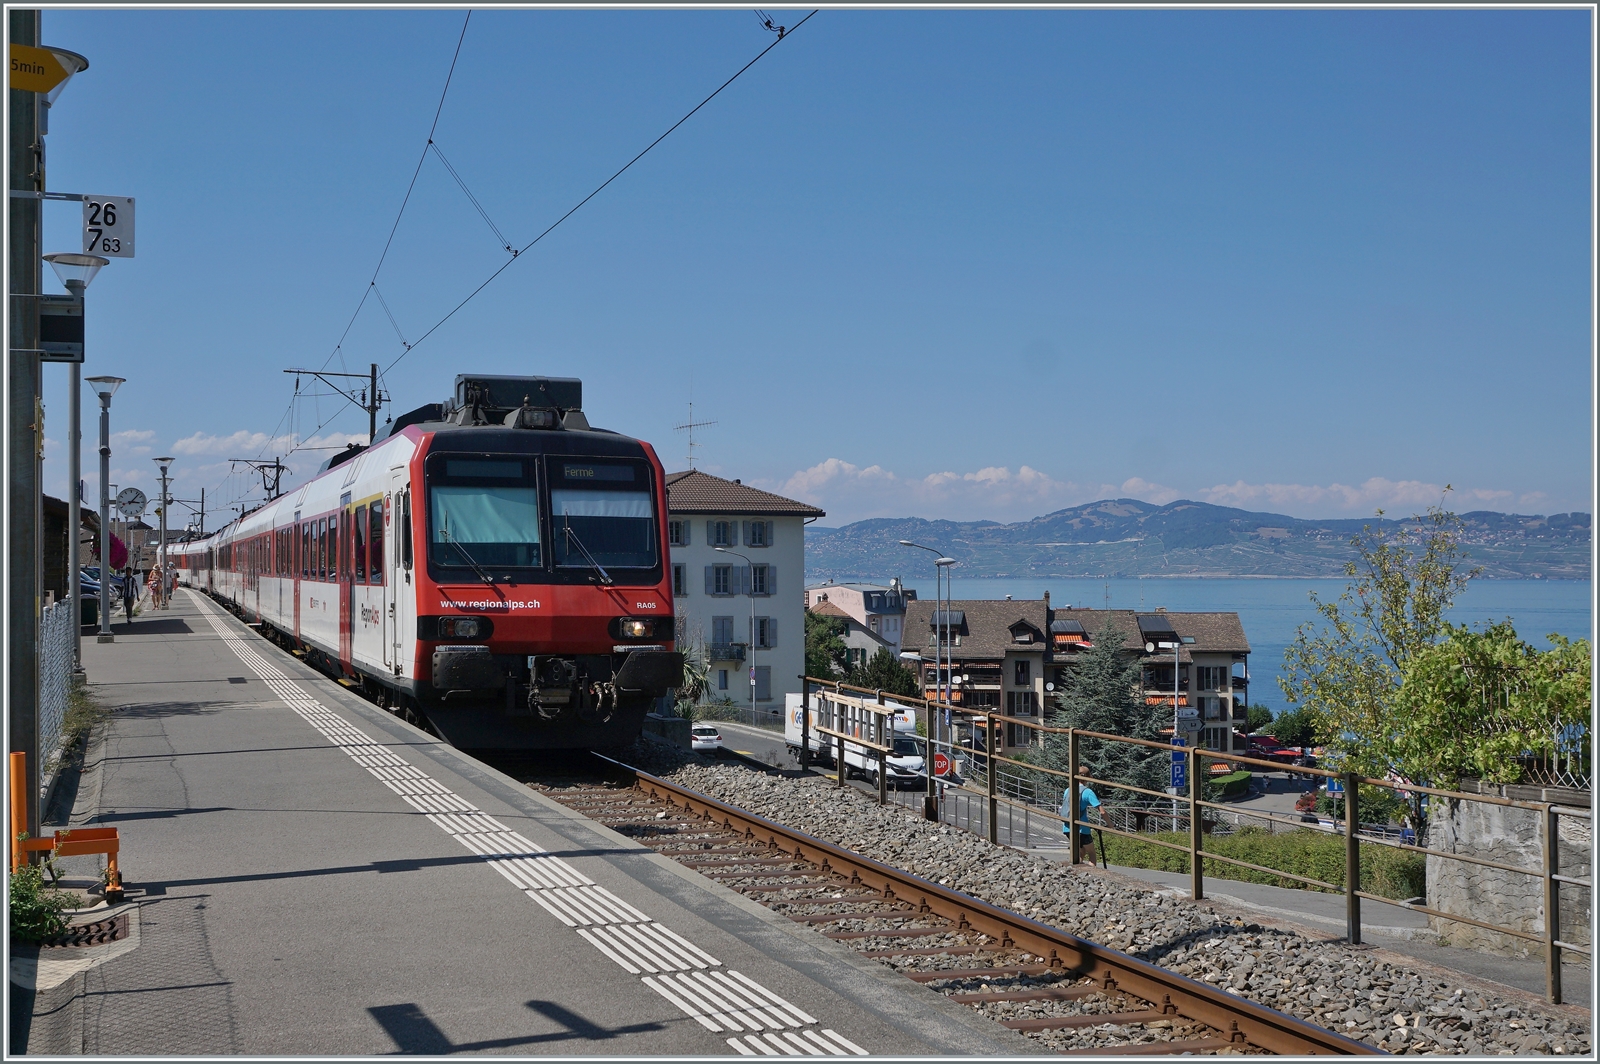 Gleich zwei Region-Alpes Domino Züge bilden in St-Gingolph der Regionalzug nach Brig. Rechts im Bild gleitet der Blick über den Genfersee ins Lavaux. 

16.Aug. 2022